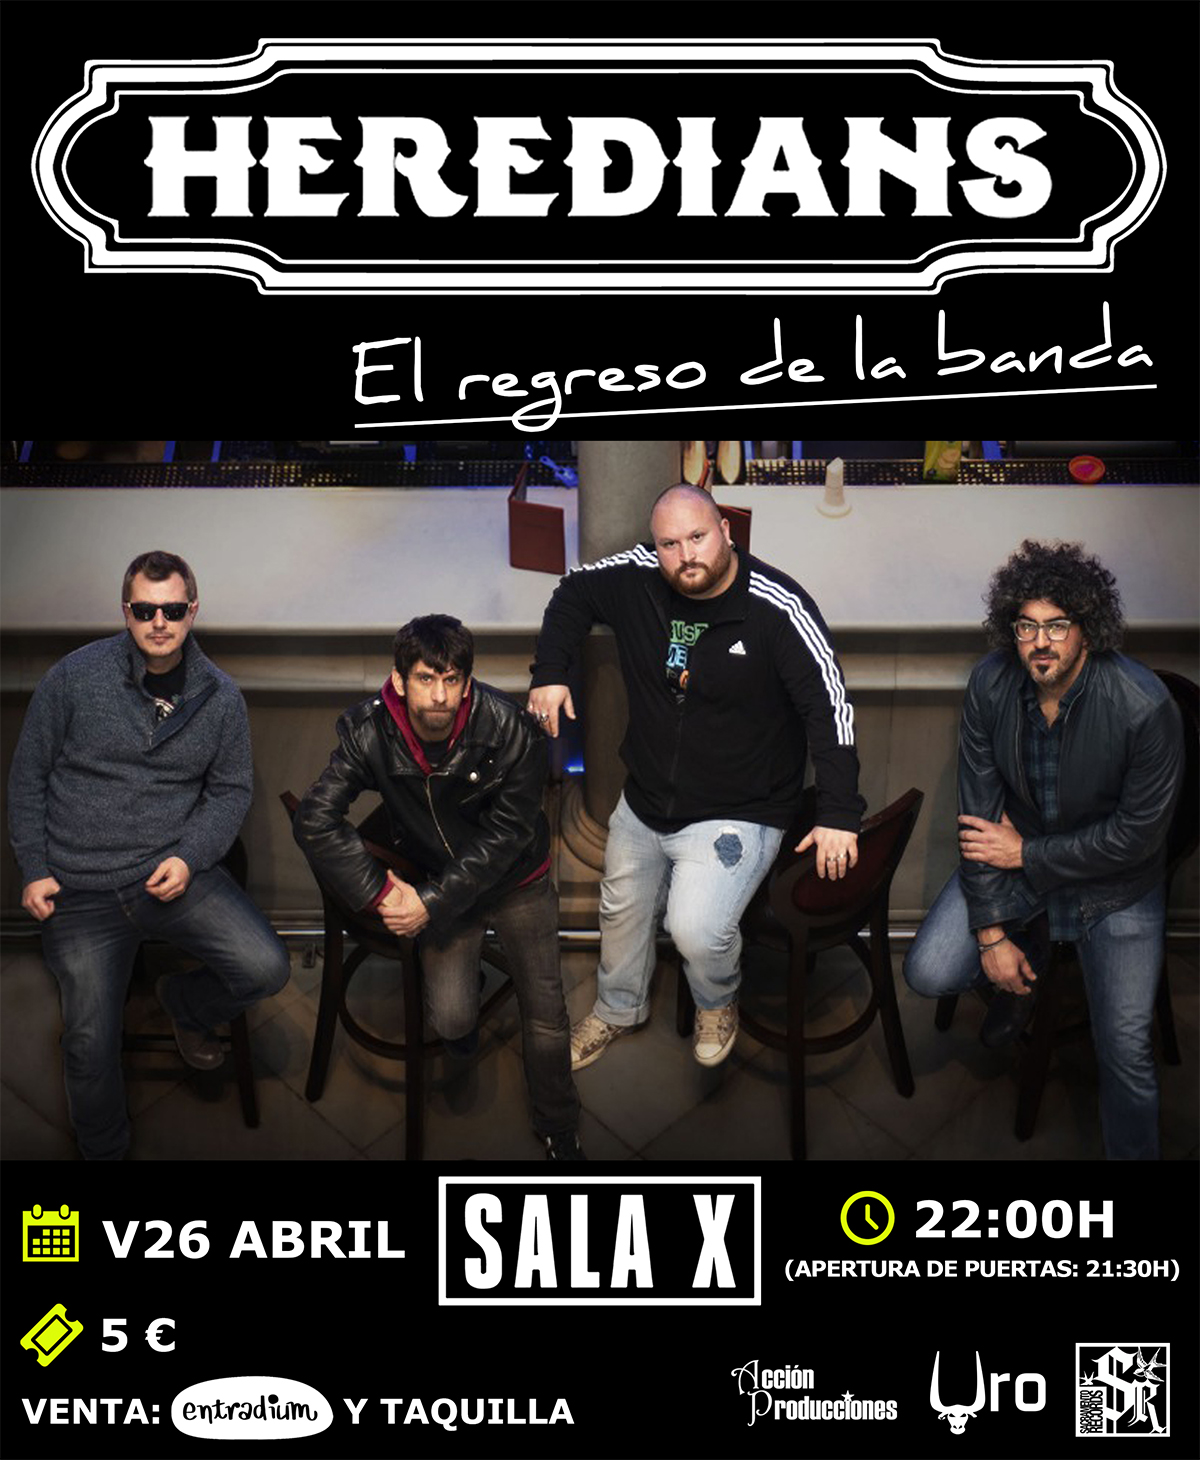 Heredians están de regreso en Sala X de Sevilla